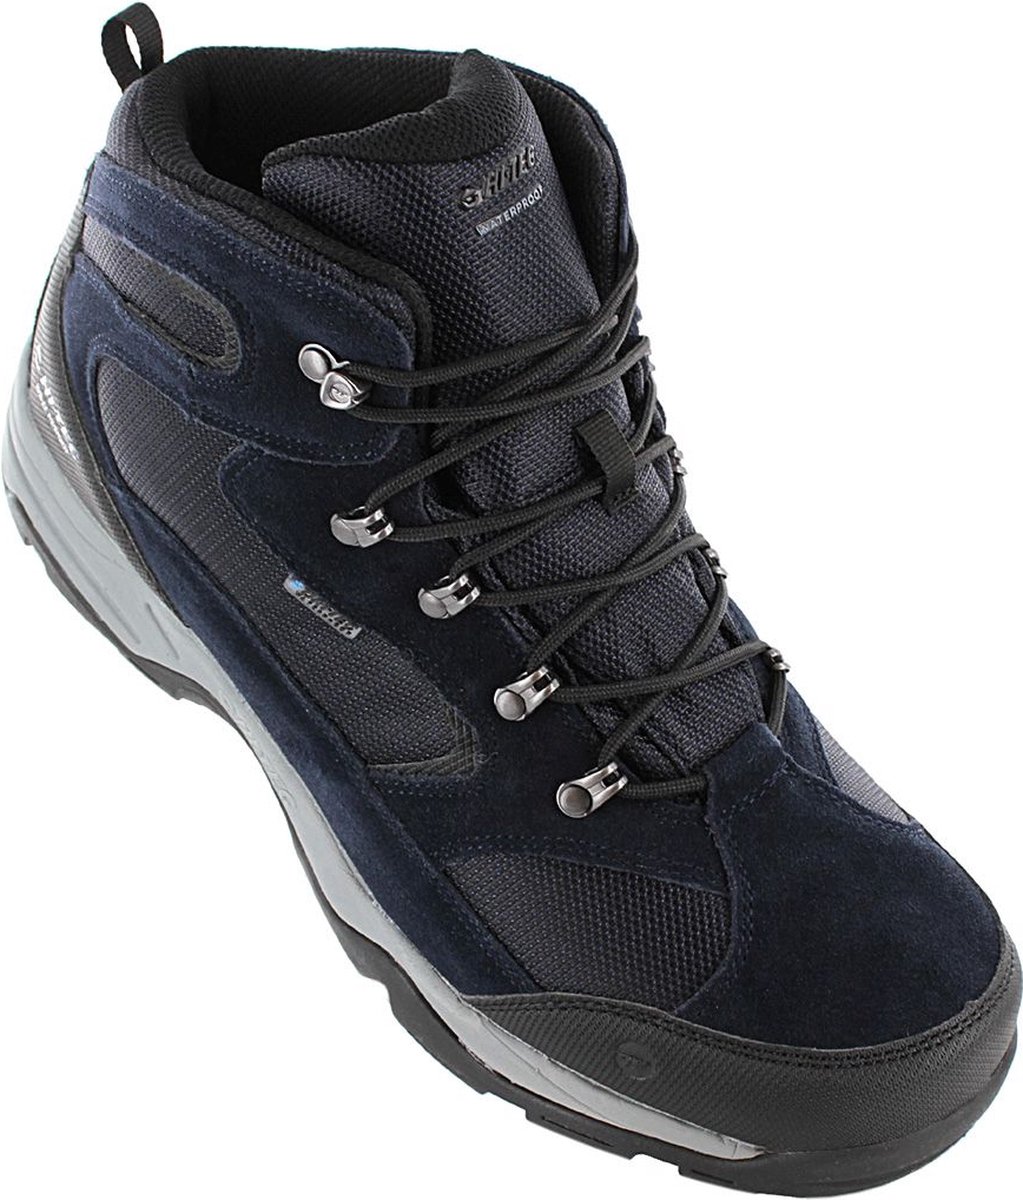 HI-TEC Storm WP - Waterproof - Heren Outdoor Wandelschoenen Outdoor schoenen Blauw O005357-031 - Maat EU 41 UK 7